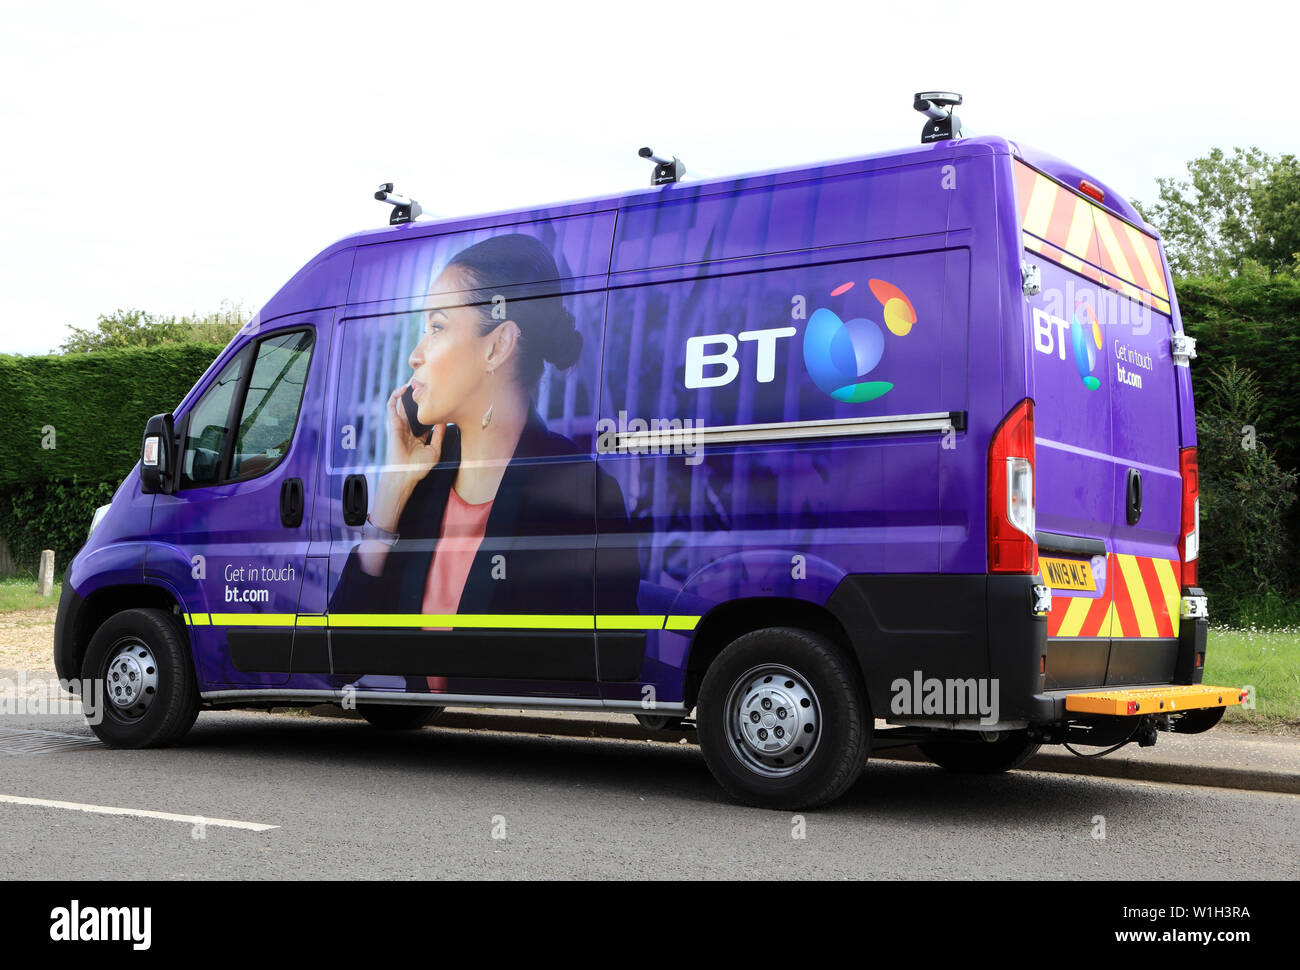 BT, British Telecom, manutenzione veicolo, van, color porpora, 2019 livrea, England, Regno Unito Foto Stock